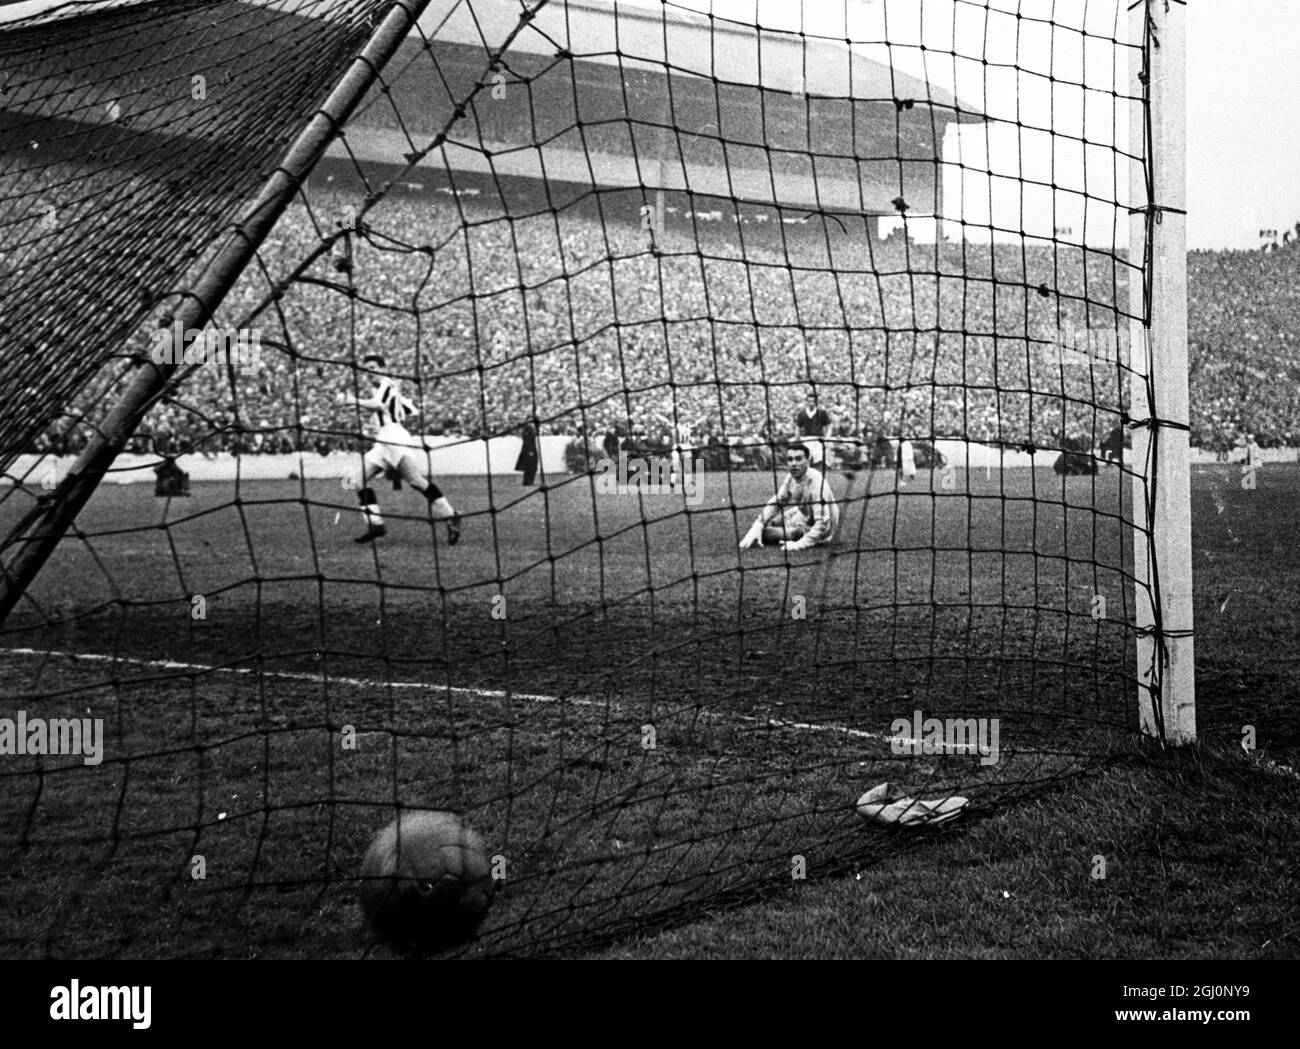 Der Ball ist im hinteren Teil des Netzes und Gerry Baker von St. Mirren (links) erzielte es, so dass es drei gegen Aberdeen im Scottish Cup Final in Hampden Park. Torhüter Martin sitzt hilflos auf dem Boden. Das Ergebnis war 3-1 . 26. April 1959 Stockfoto